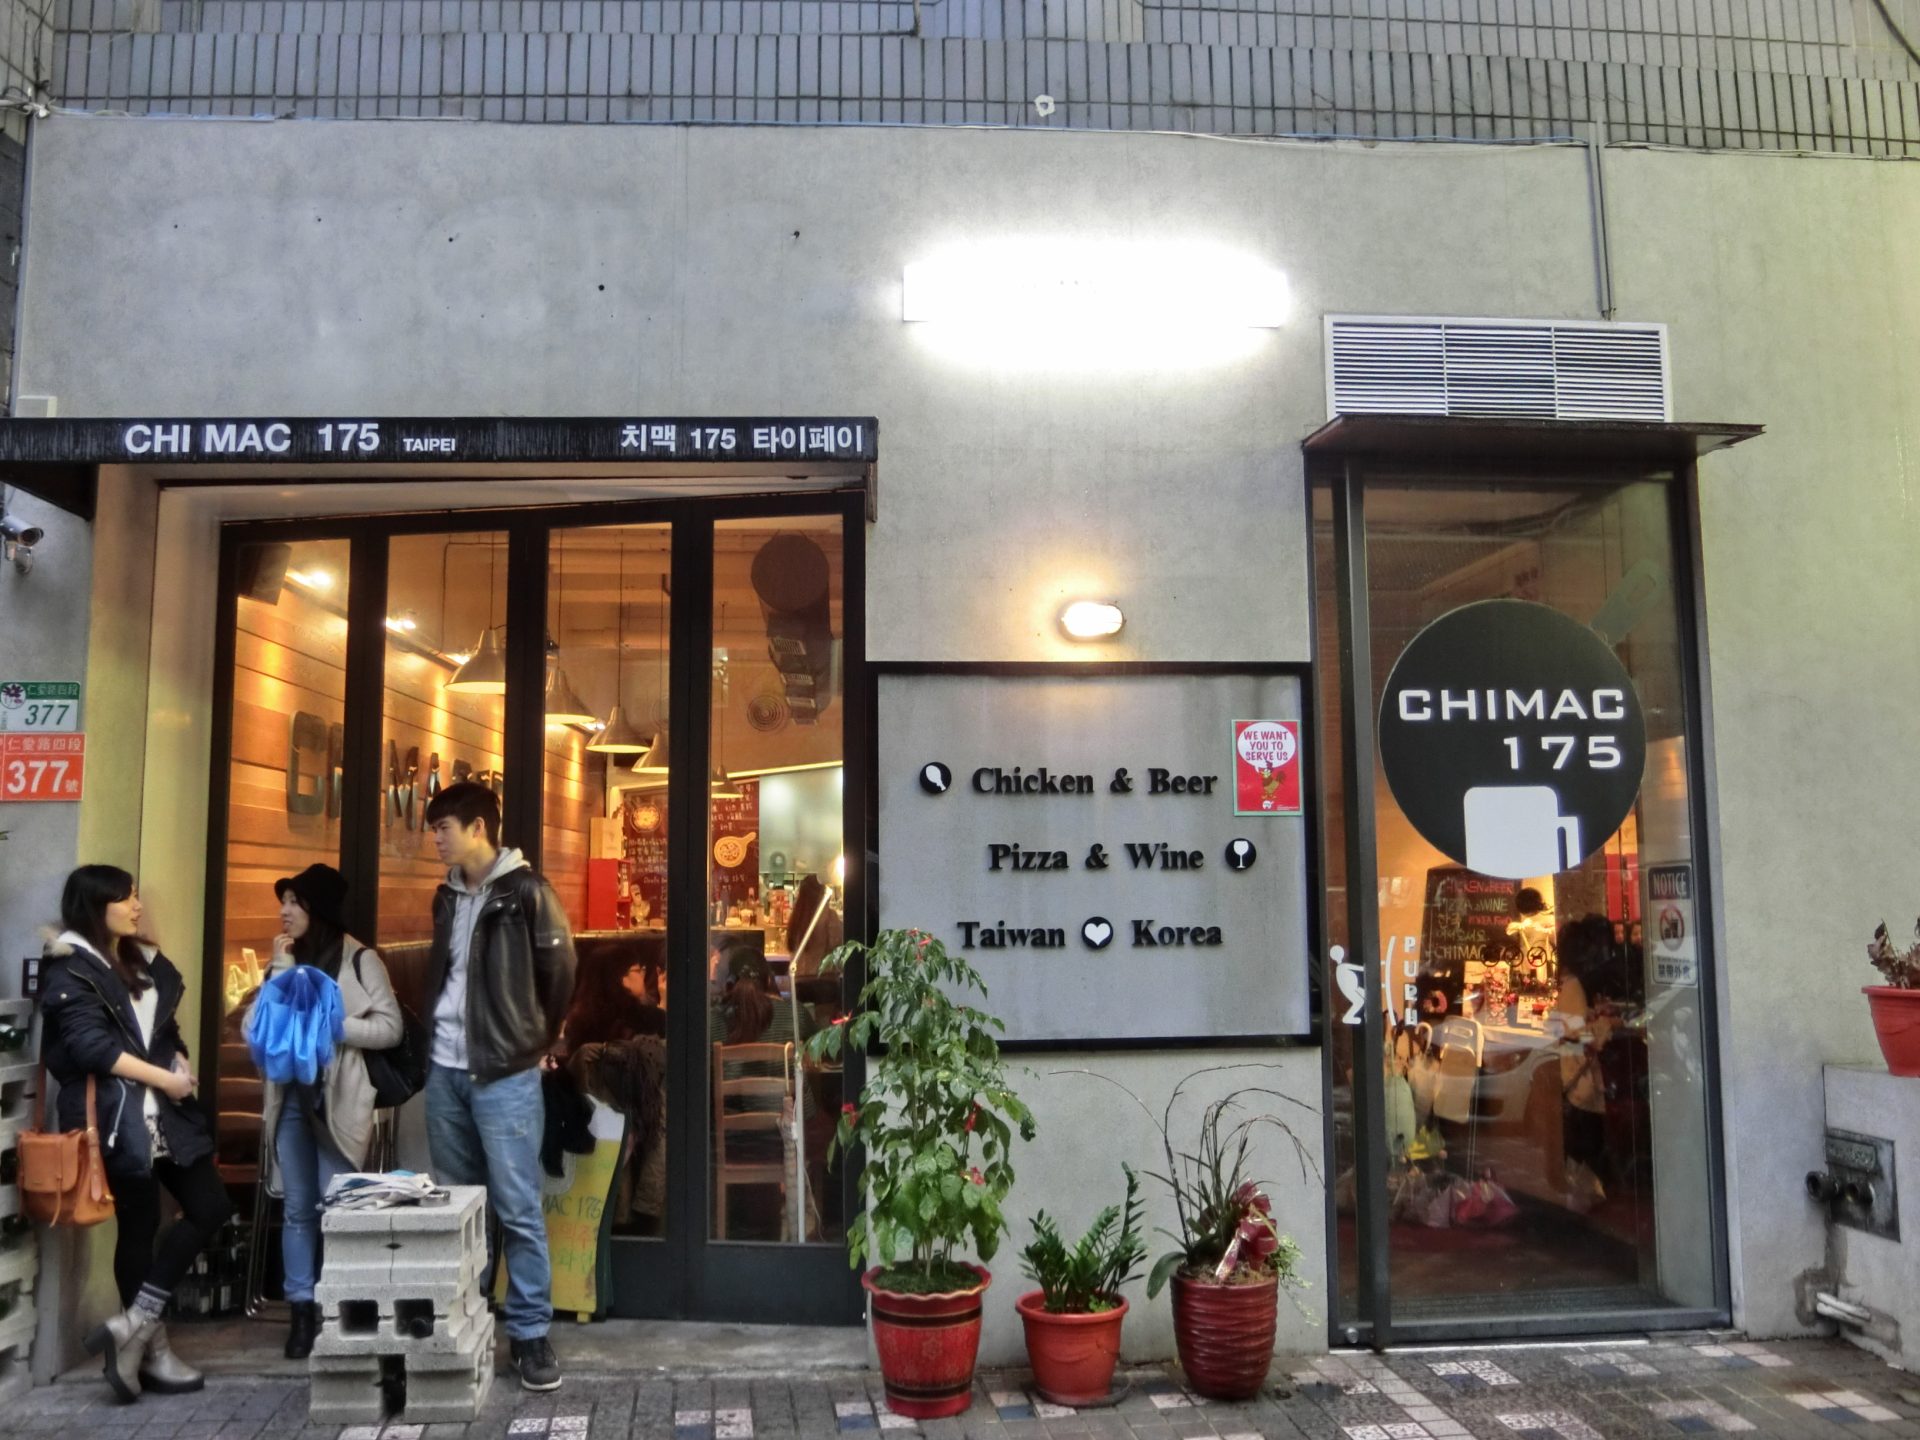 「捷運：國父紀念館站」Chimac175 Taipei 美食酒吧